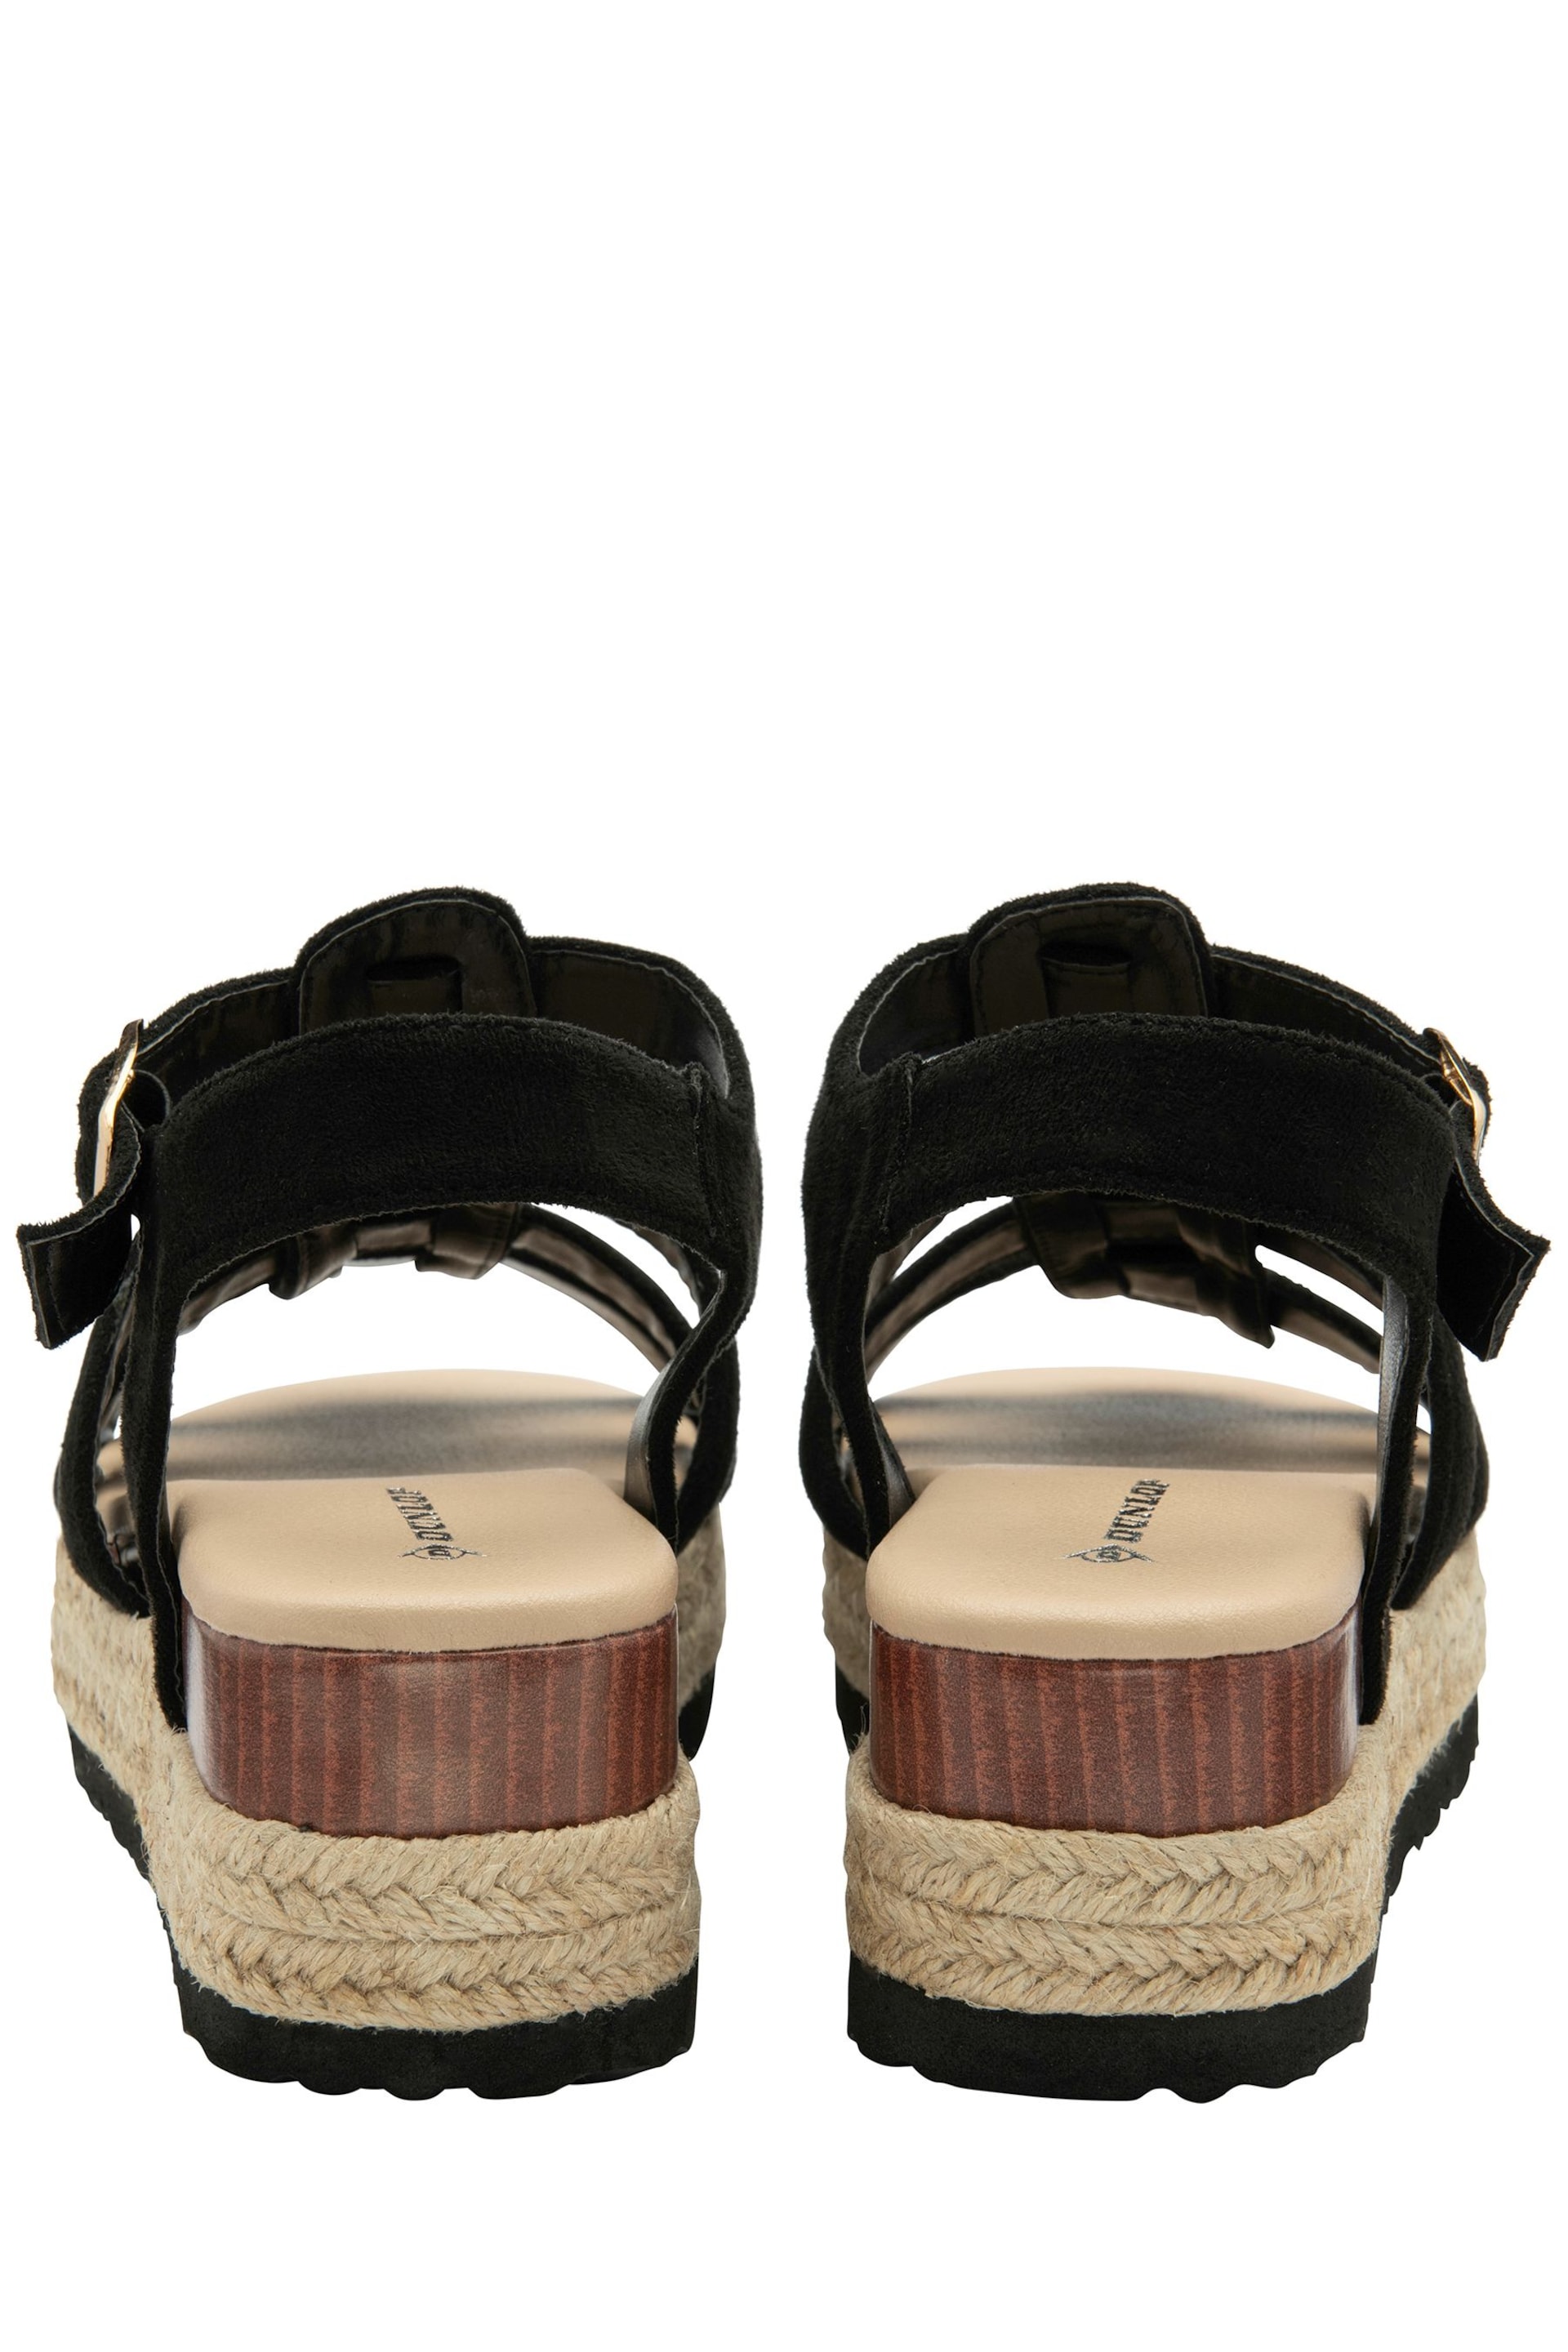 Dunlop Black Ladies Flatform Espadrille Sandals - Image 3 of 4